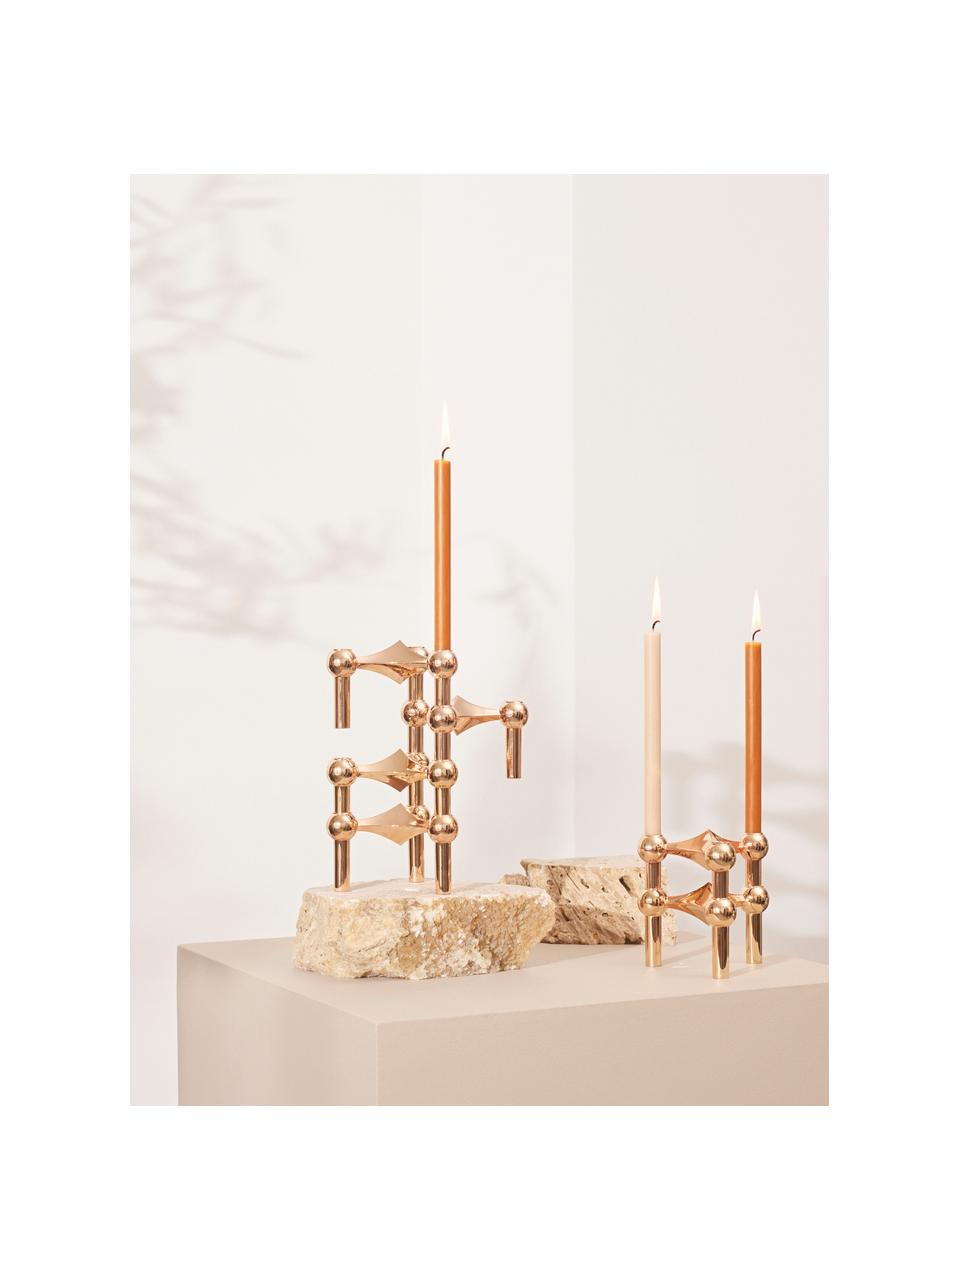 Tenké stolní svíčky Stoff Nagel, 12 ks, Parafínový vosk, Hořčicově žlutá, V 18 cm